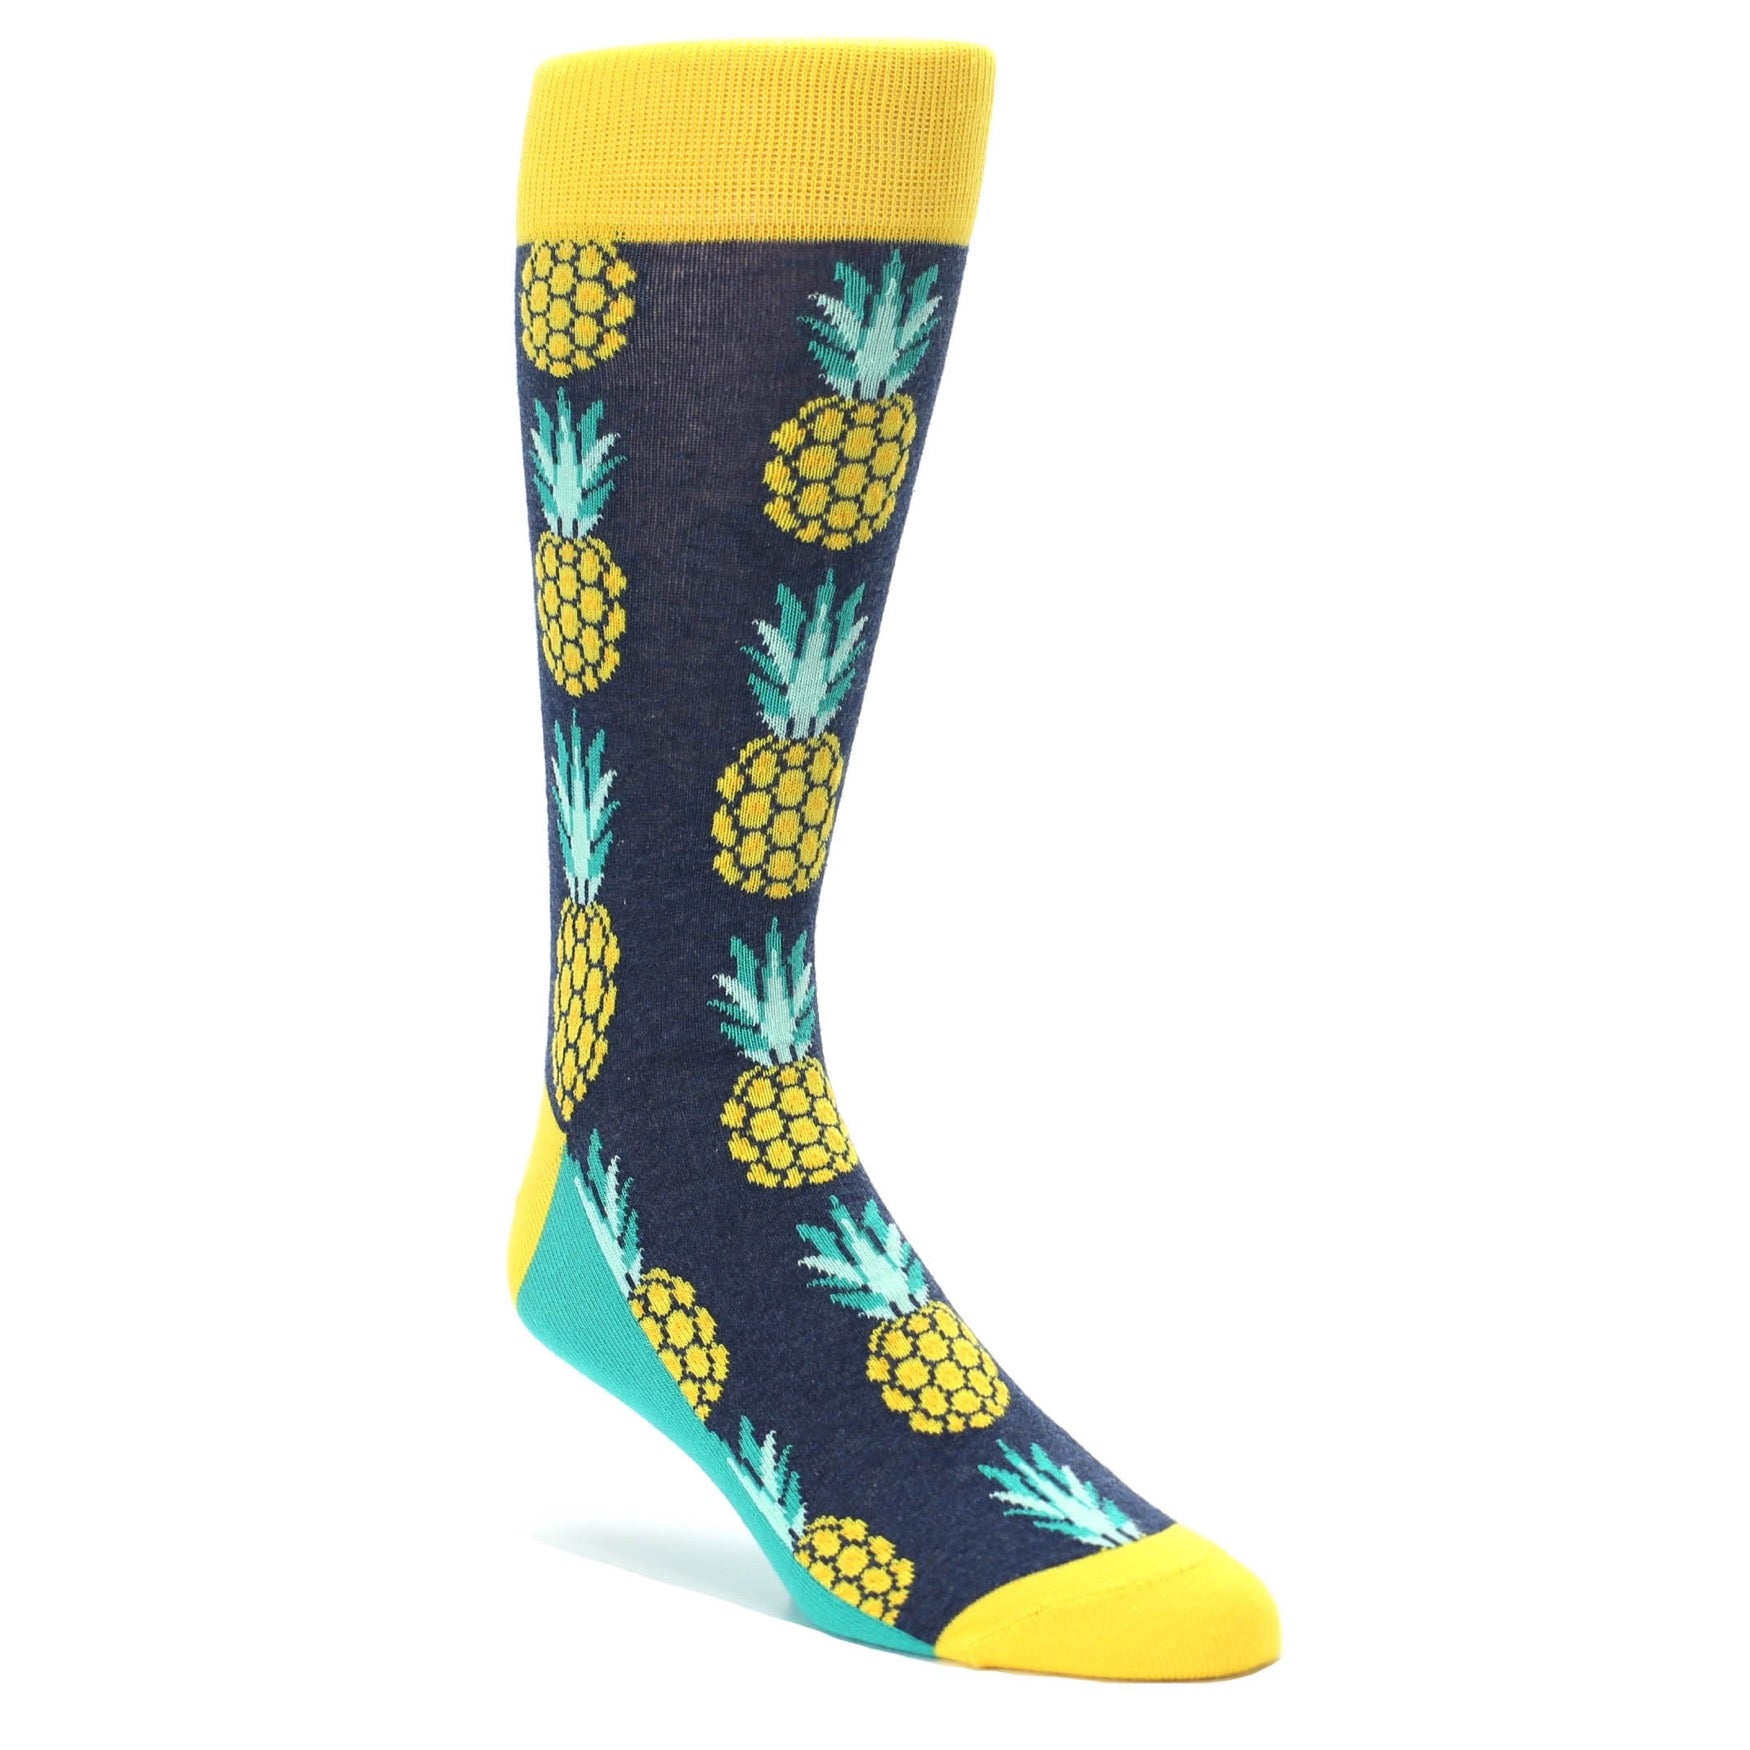 Pineapple Socks for Men by Statement Sockwear